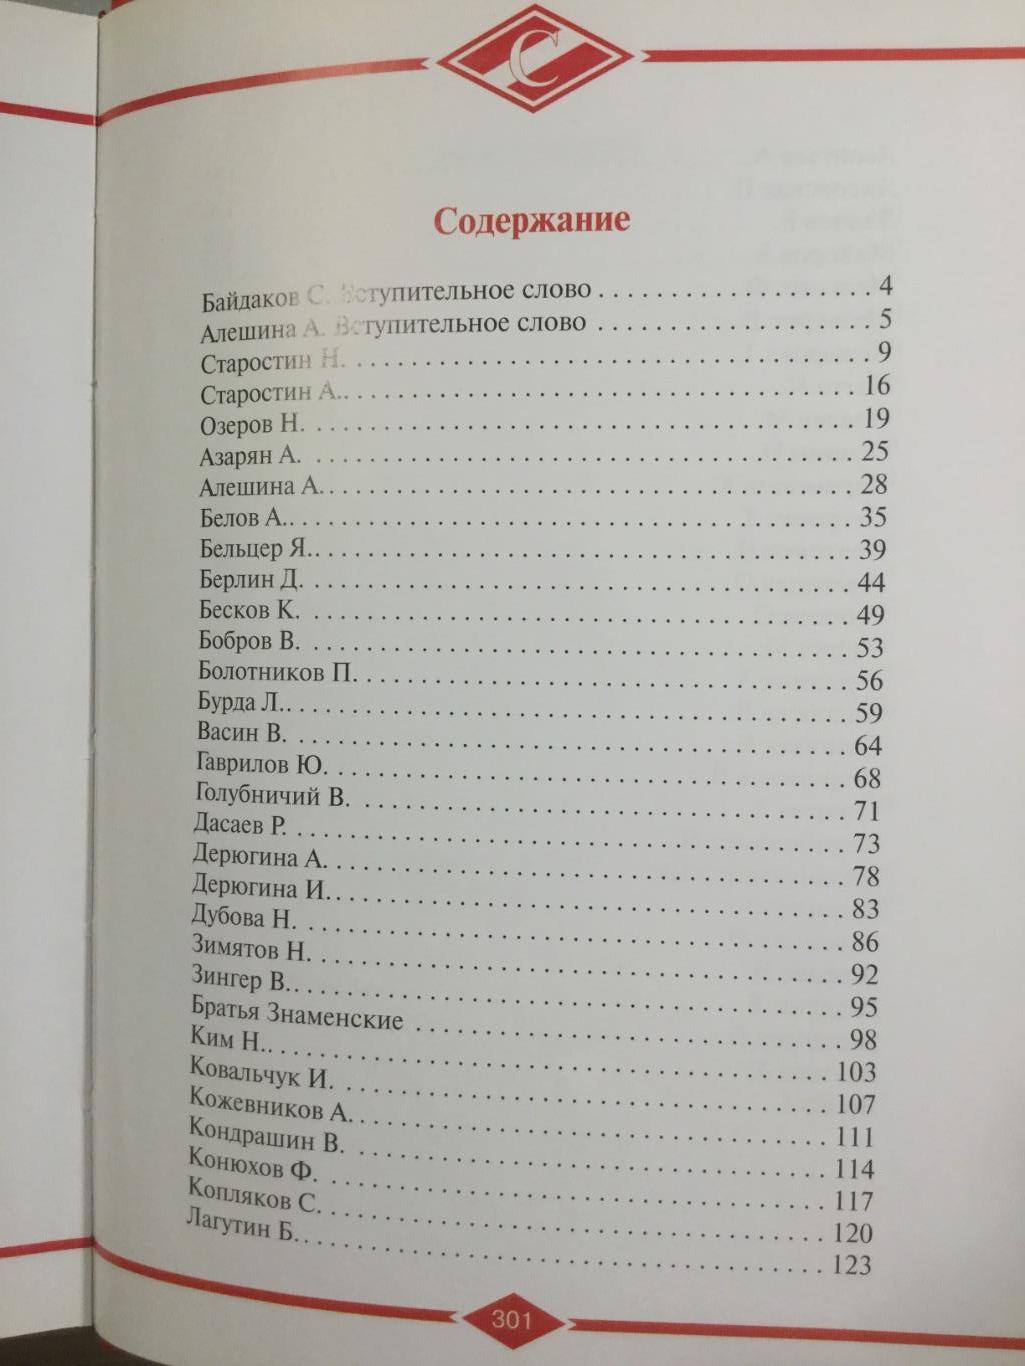 ФК Спартак Москва - 75 лет. Творцы истории (1935 -2010), 304 стр. 2